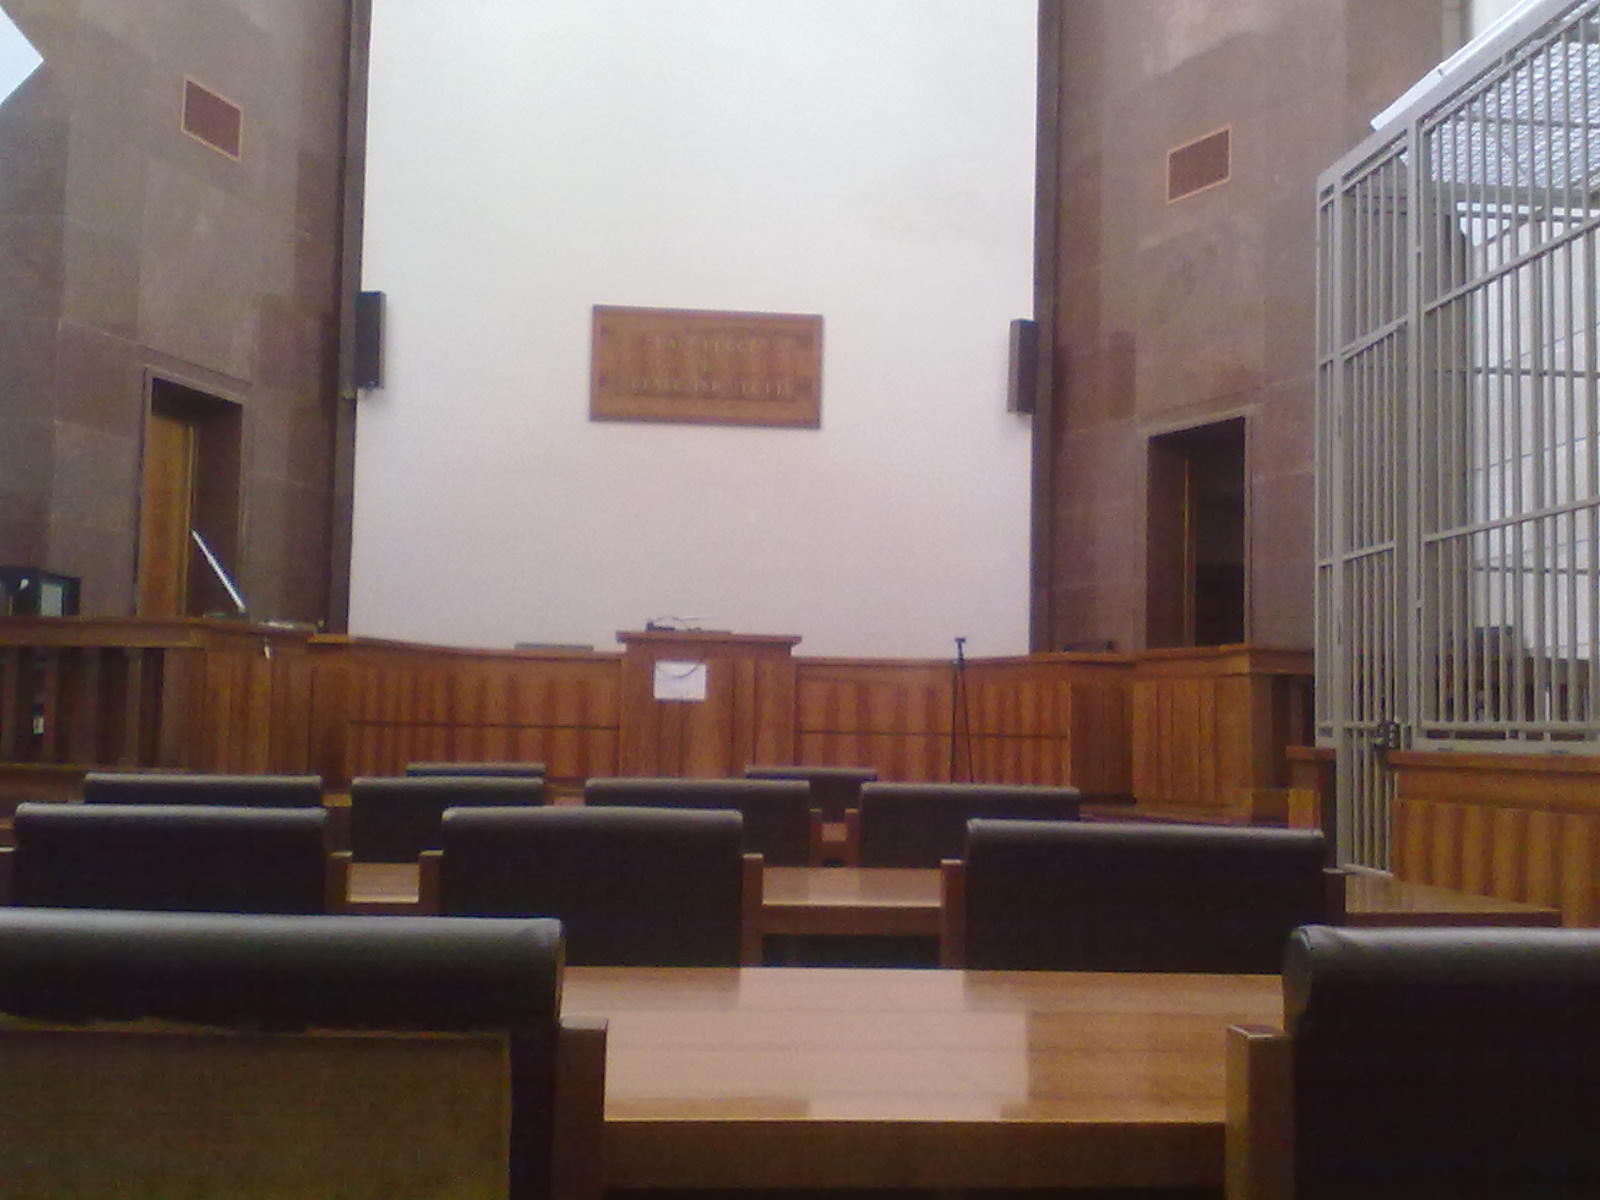 Tribunale di Ascoli Piceno